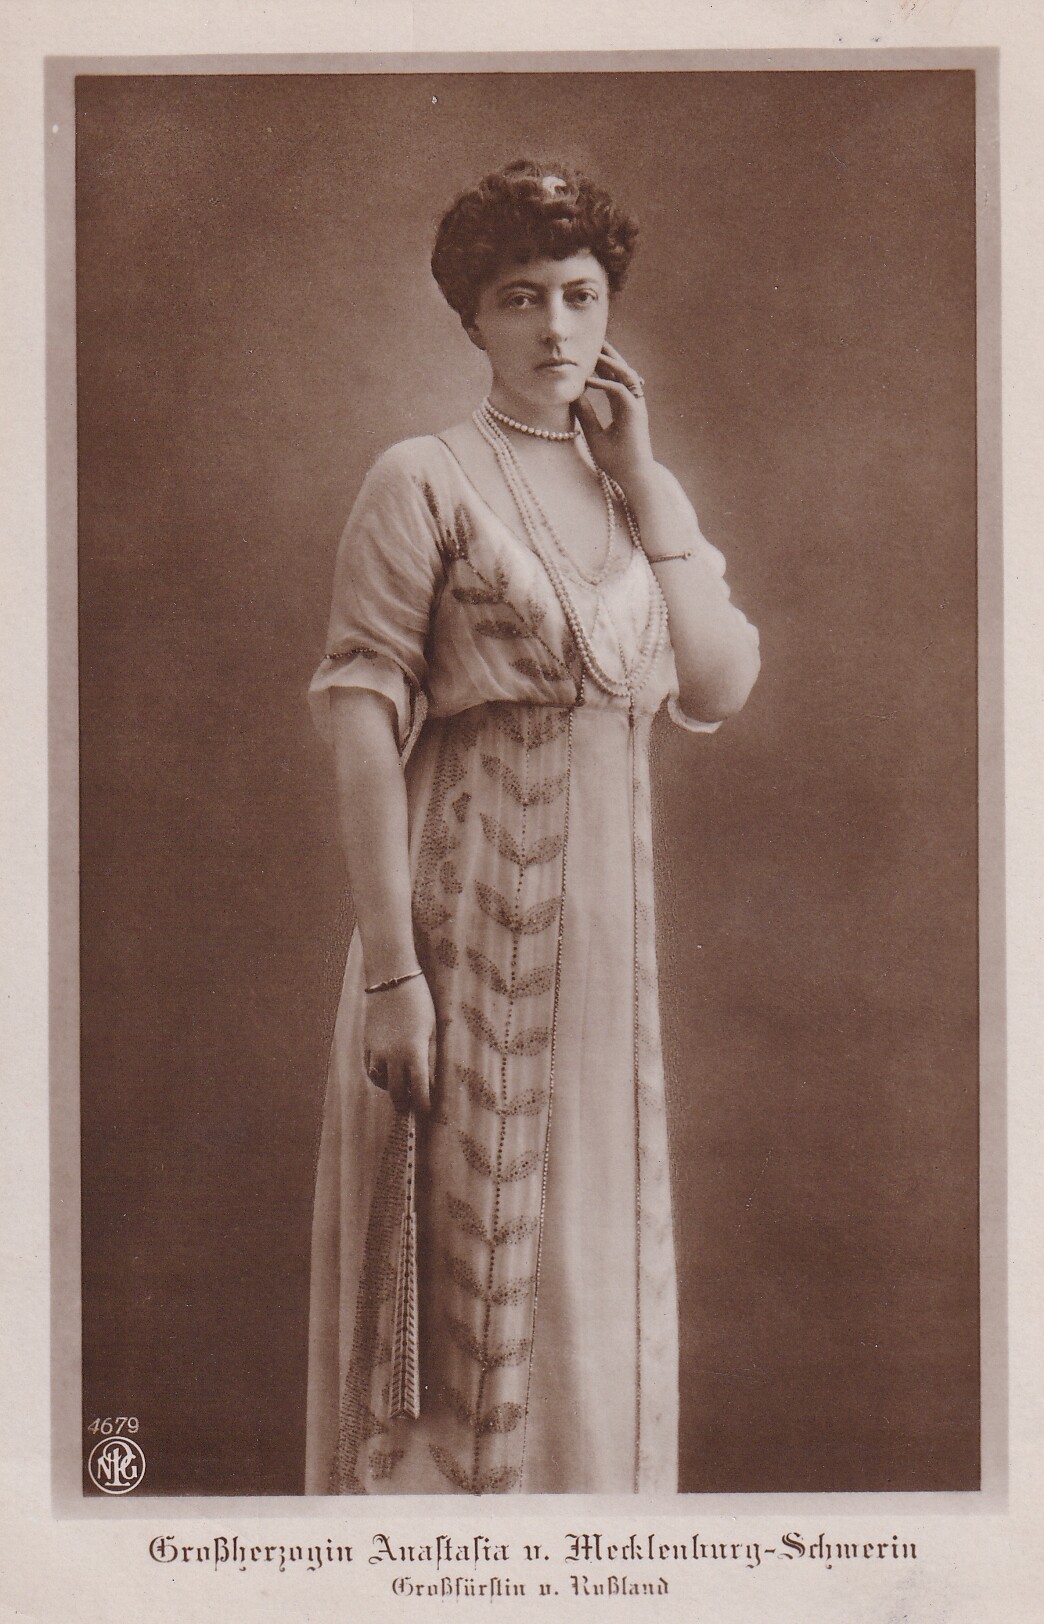 Bildpostkarte mit Foto von Großherzogin Anastasia von Mecklenburg-Schwerin (1860-1922), 1913 (Schloß Wernigerode GmbH RR-F)